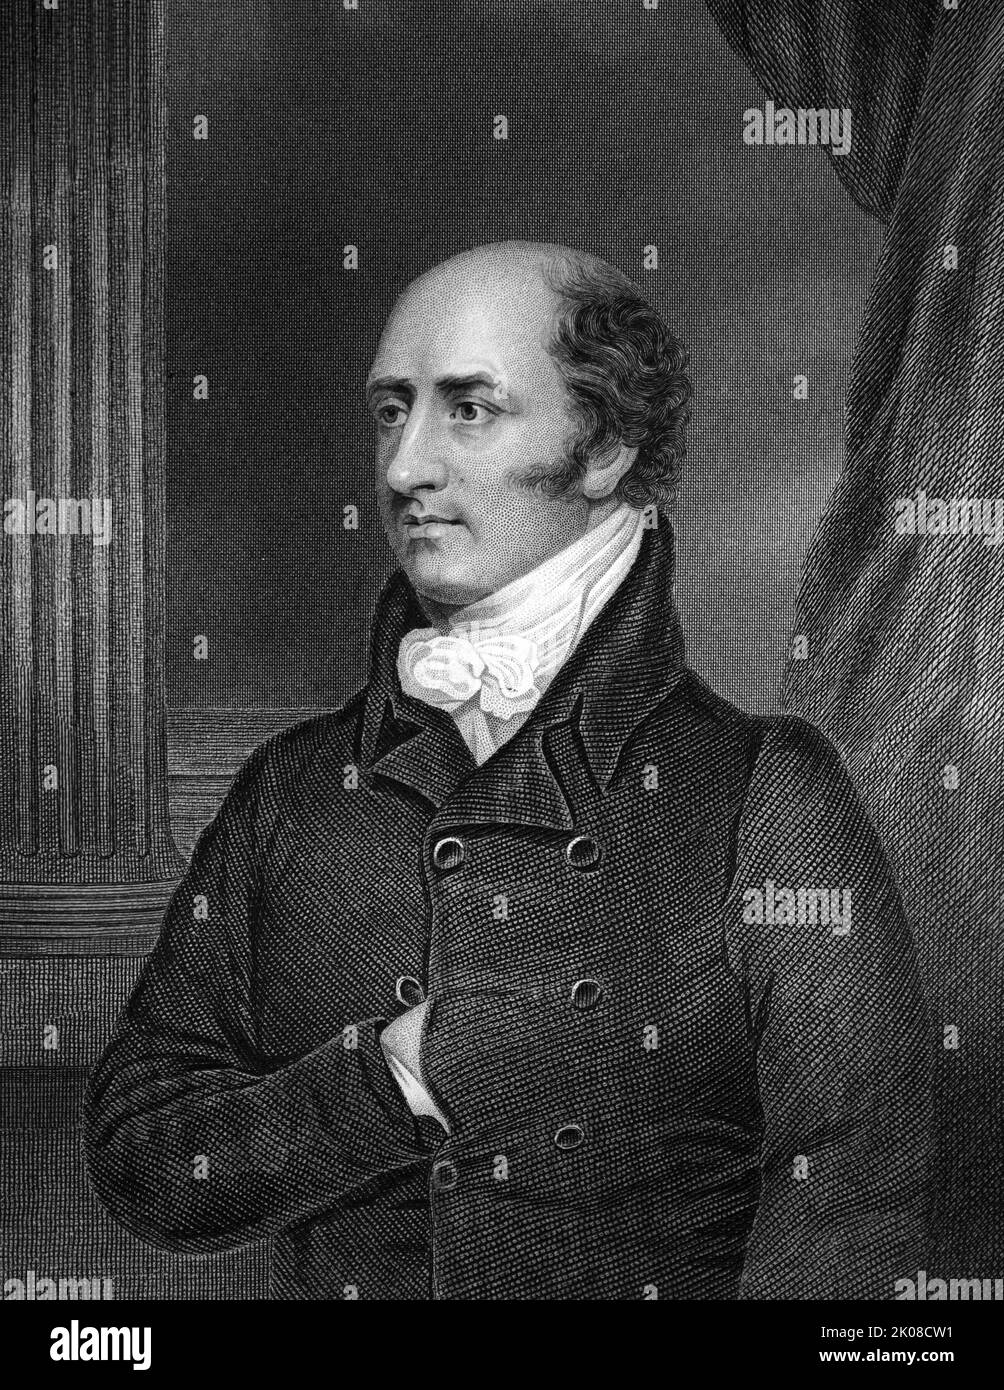 George Canning FRS (11. April 1770 - 8. August 1827) war ein britischer Tory-Staatsmann. Er bekleidete verschiedene hochrangige Kabinettspositionen unter zahlreichen Premierministern, darunter zwei wichtige Amtszeiten als Außenminister, und wurde schließlich in den letzten 118 Tagen seines Lebens, von April bis August 1827, Premierminister des Vereinigten Königreichs Stockfoto